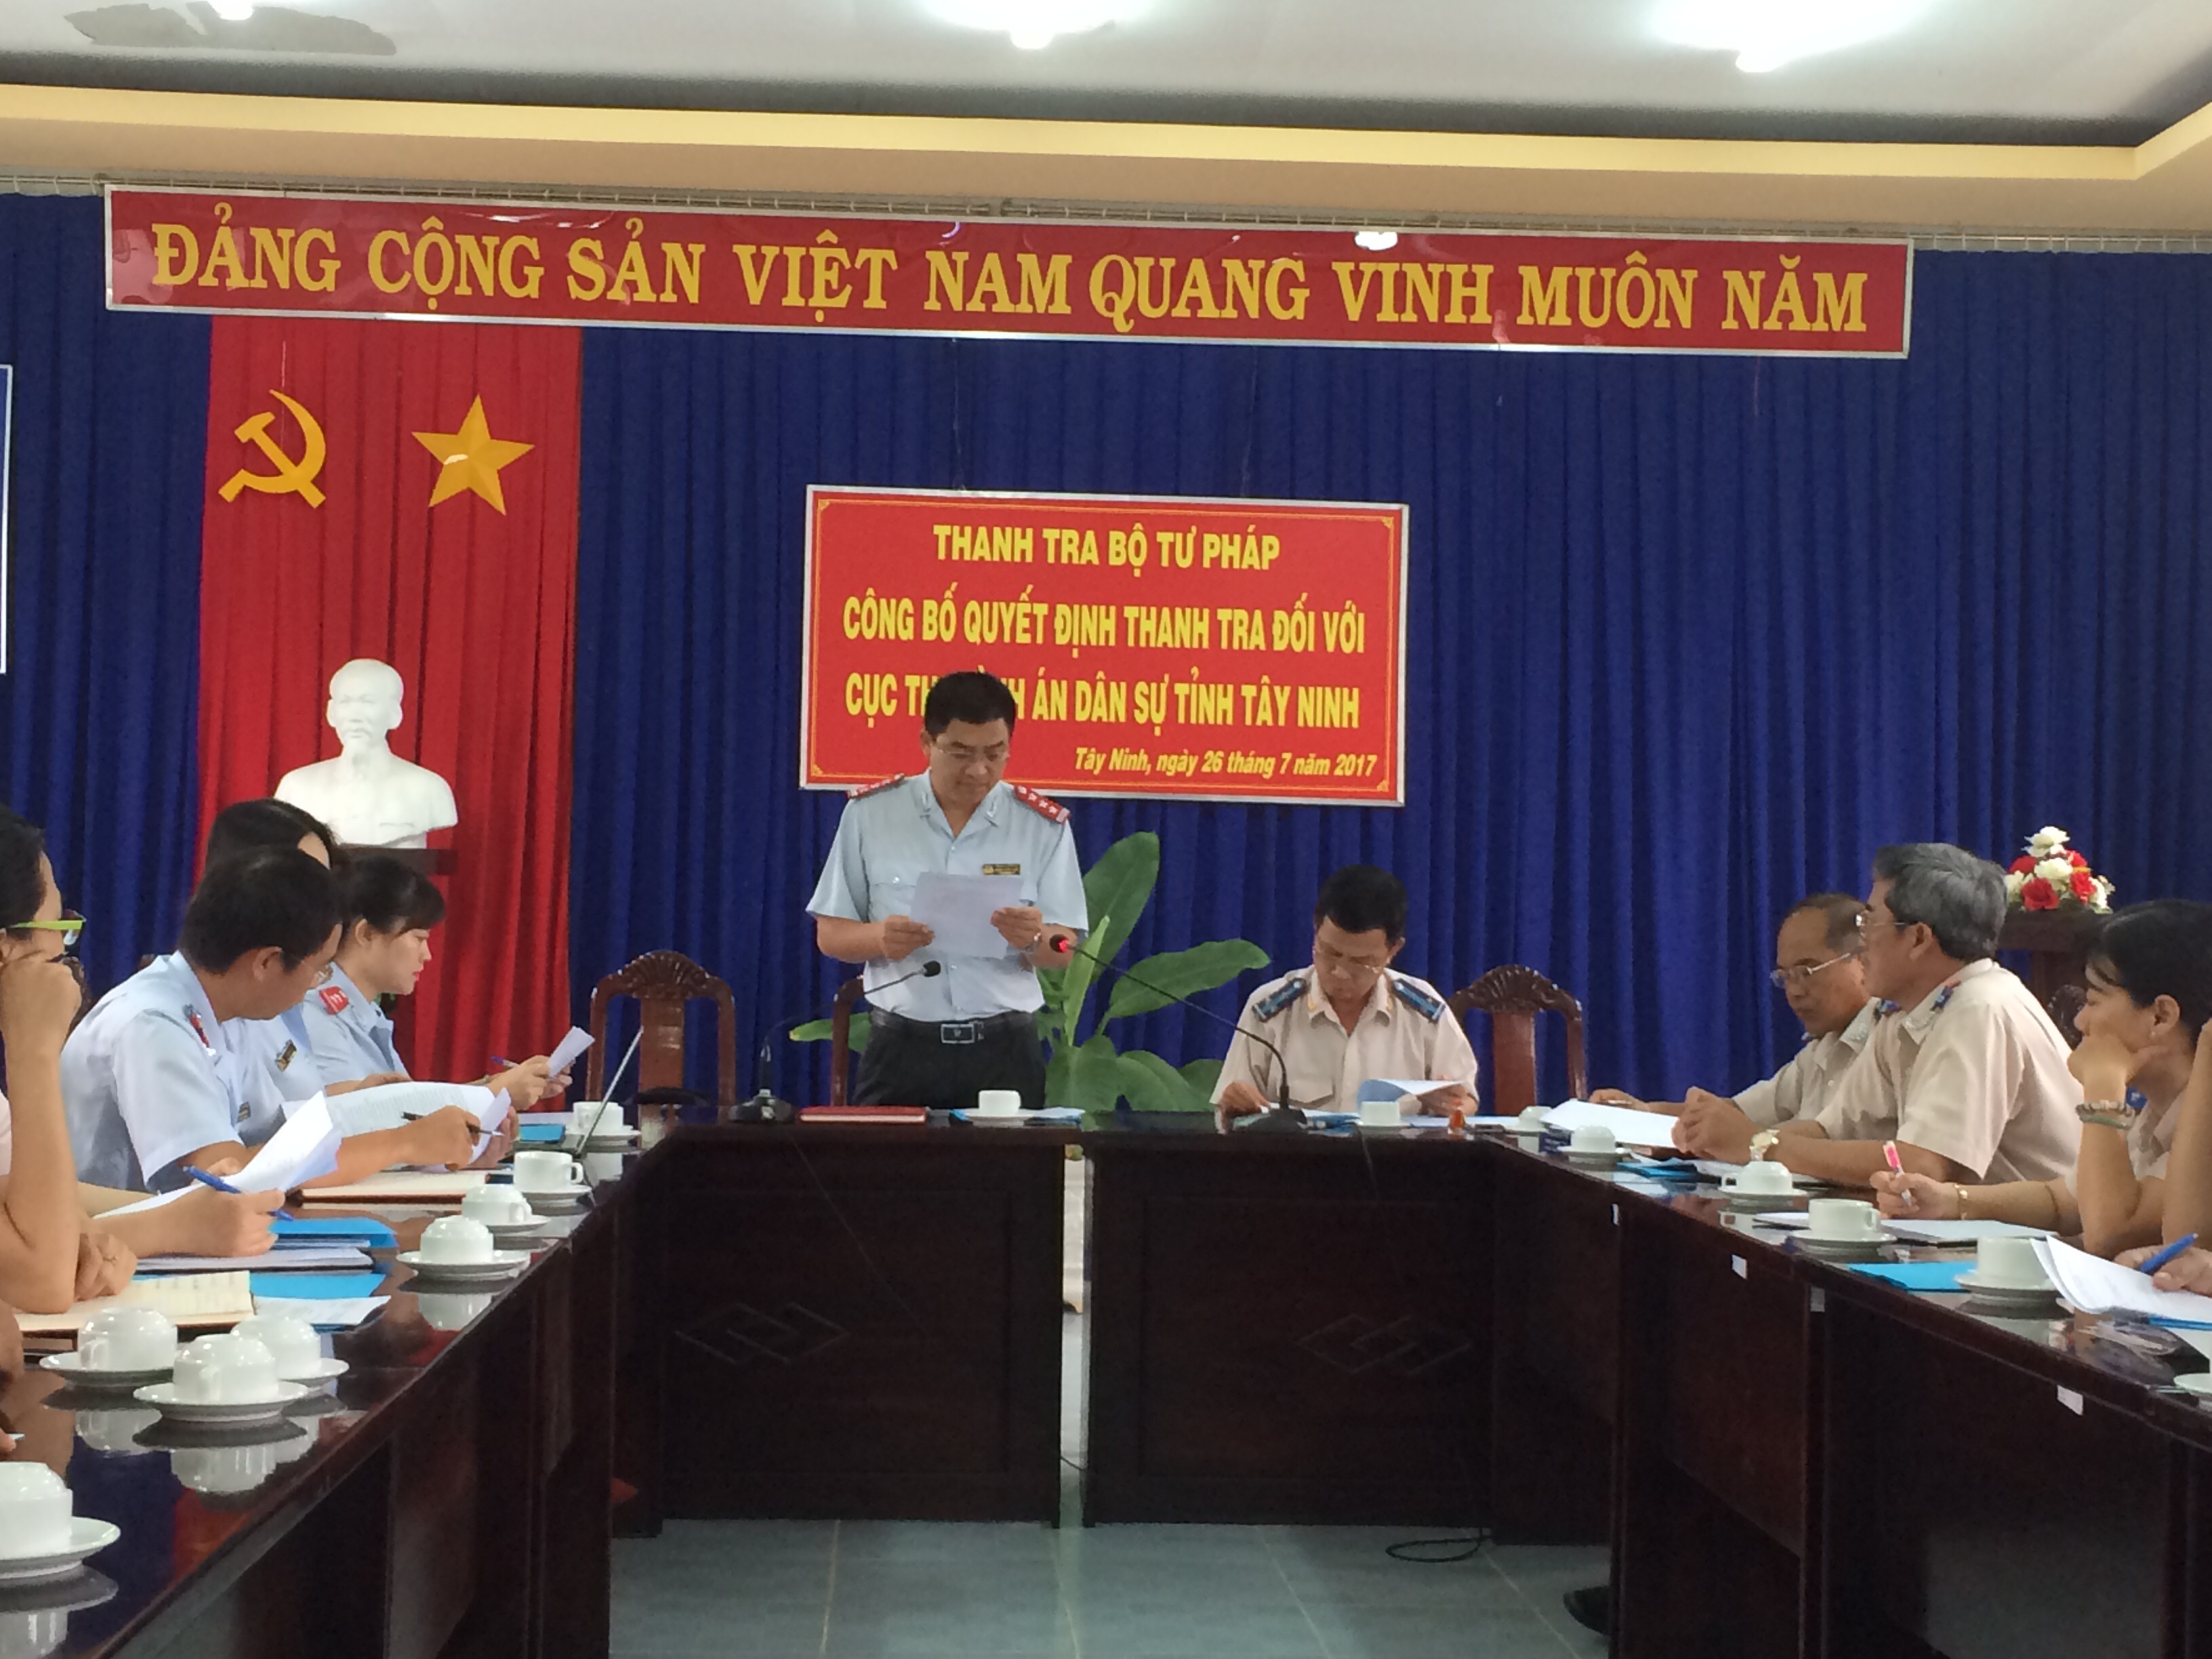 Thanh tra Bộ Tư pháp công bố Quyết định thanh tra Cục Thi hành án dân sự tỉnh Tây Ninh